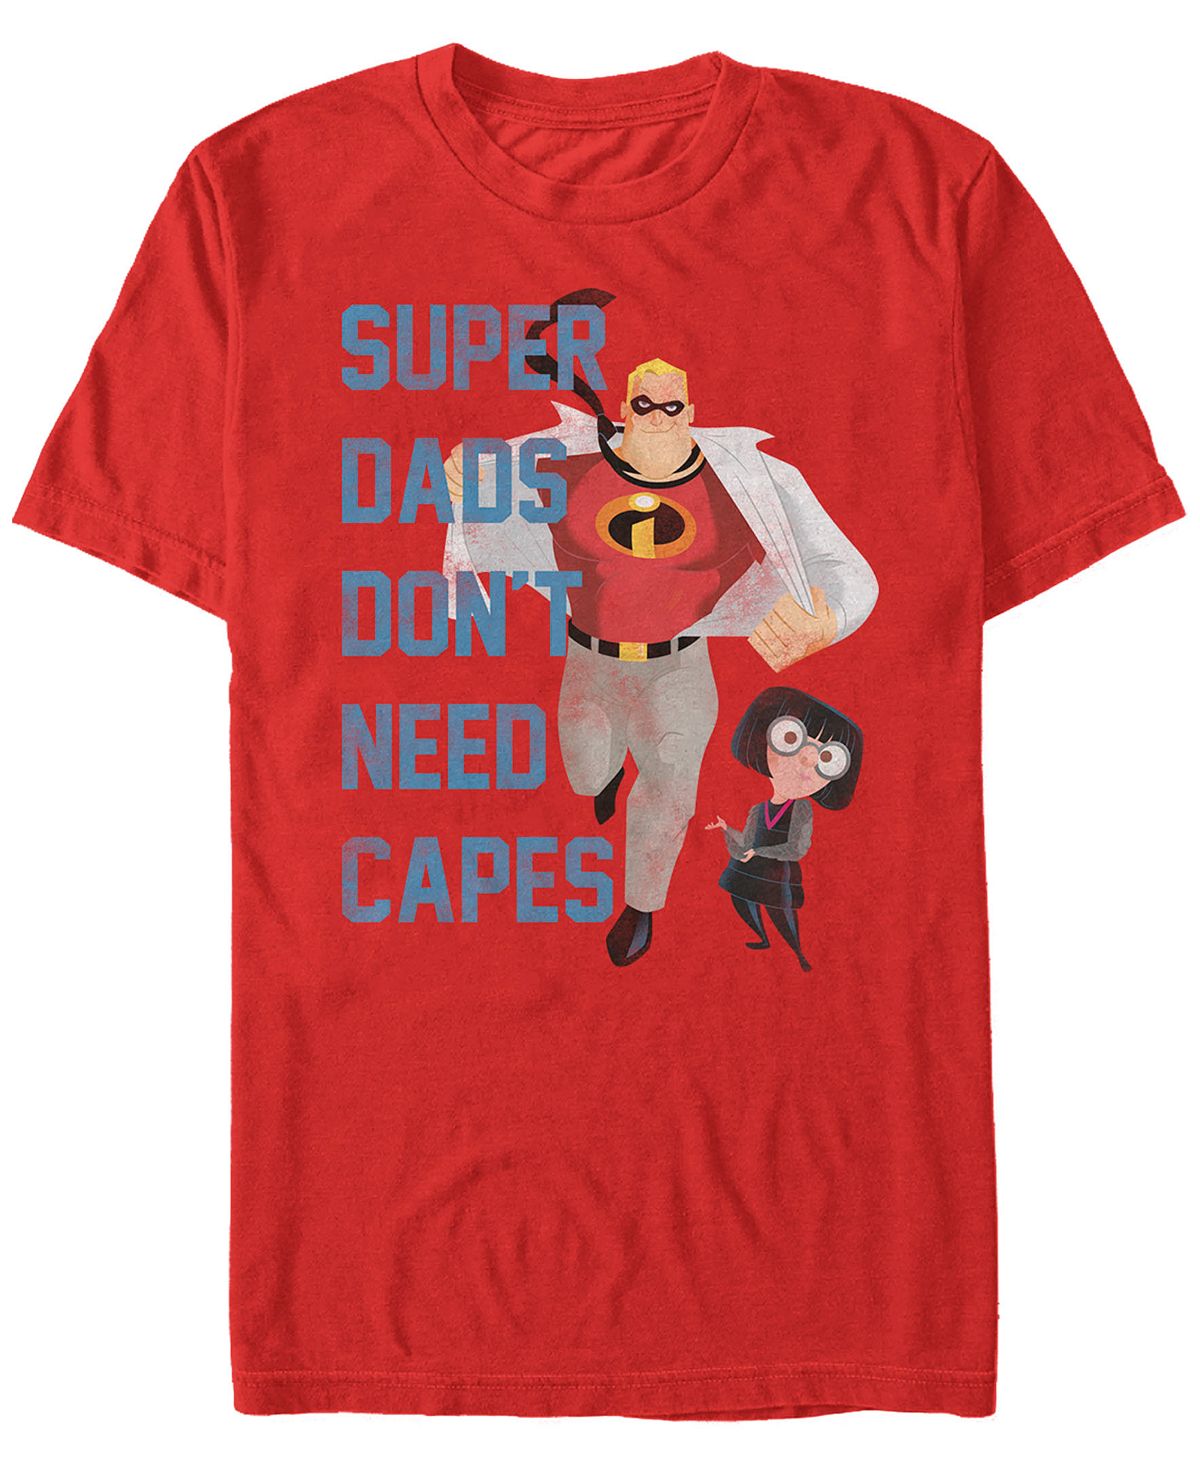 Мужская футболка с короткими рукавами disney pixar incredibles super dads no capes Fifth Sun, красный